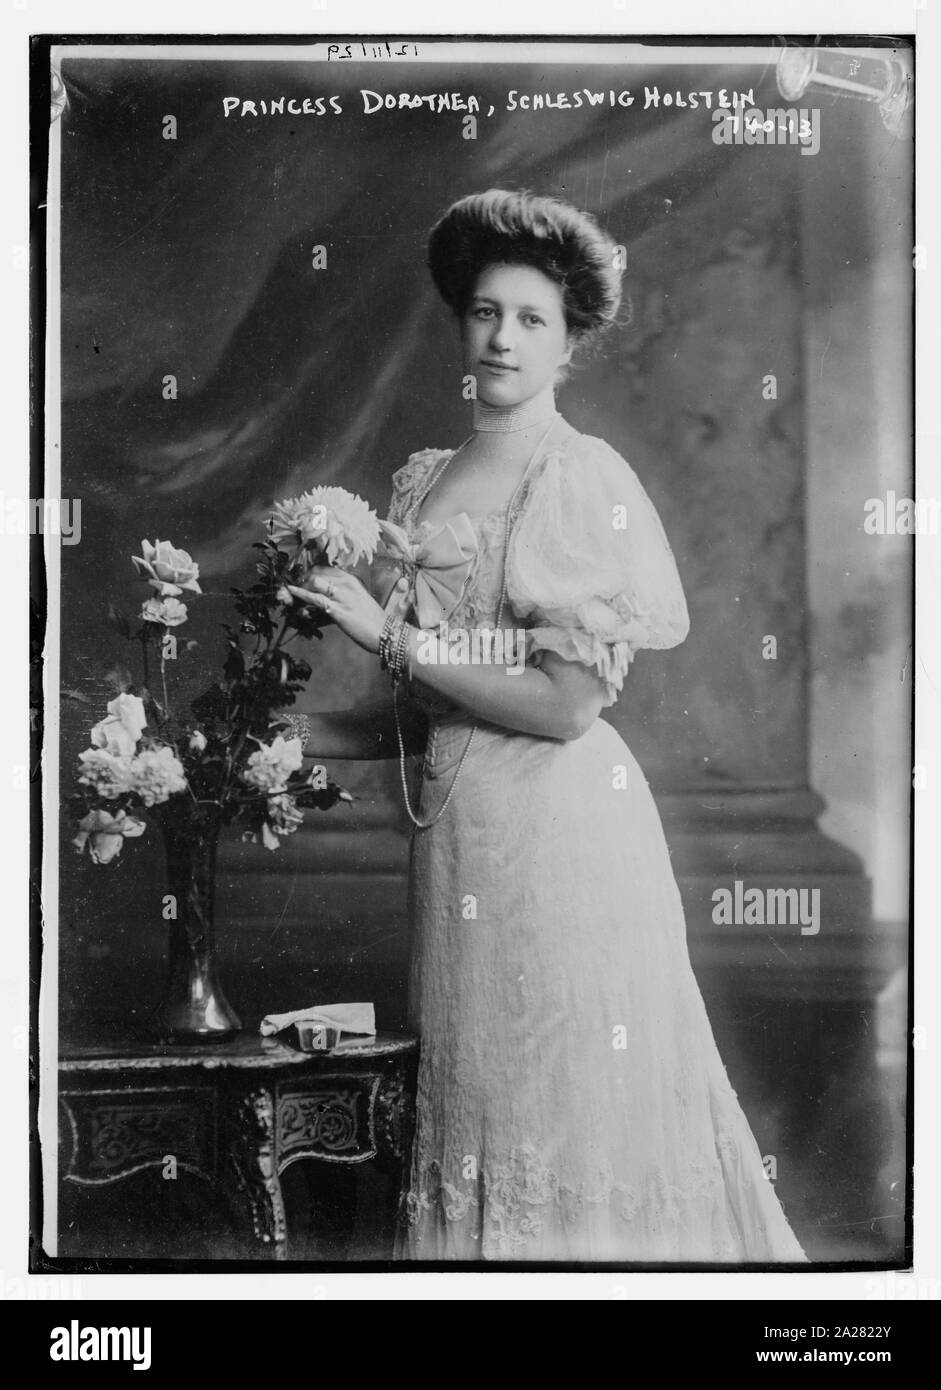 La princesse Dorothea, Schleswig Holstein, debout par table sur laquelle il y a un vase de fleurs Banque D'Images